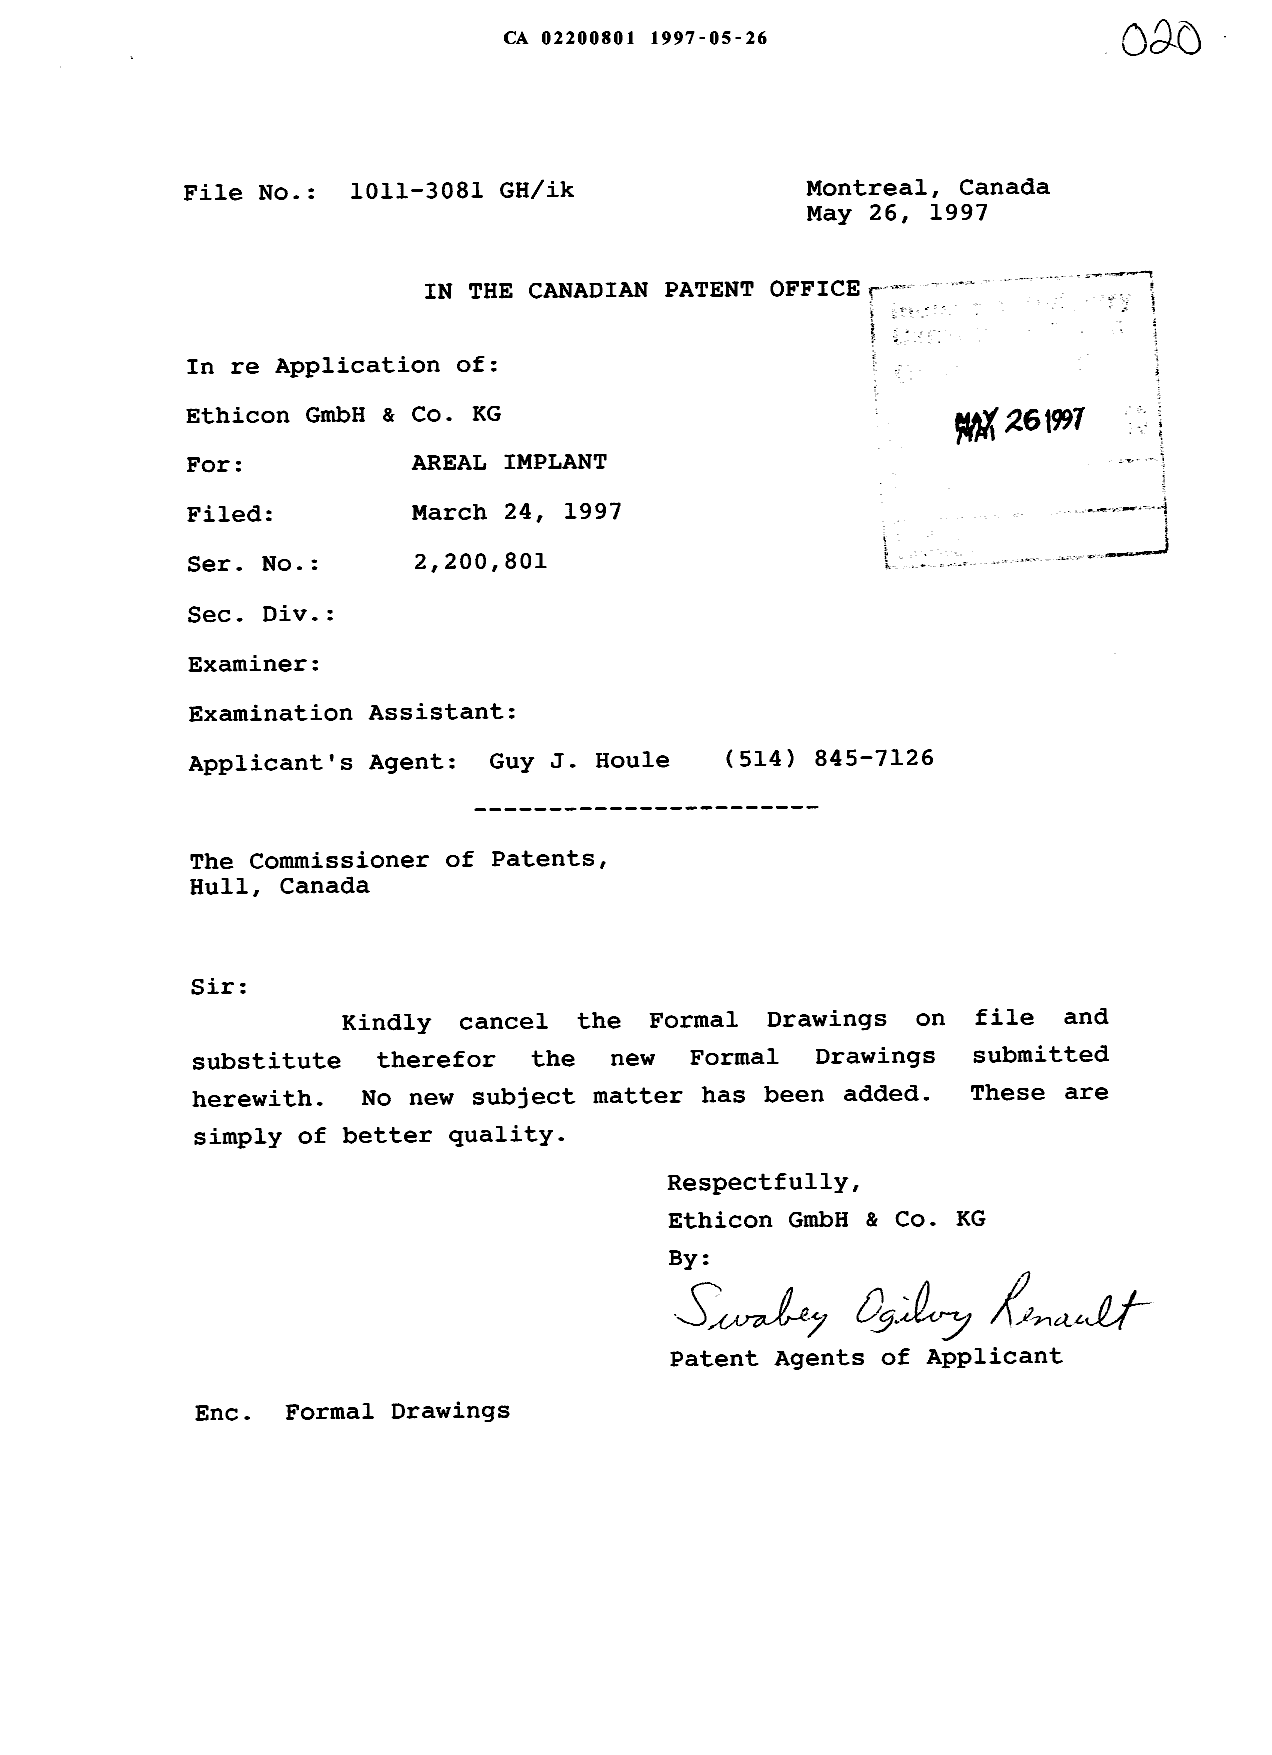 Document de brevet canadien 2200801. Correspondance 19961226. Image 1 de 7